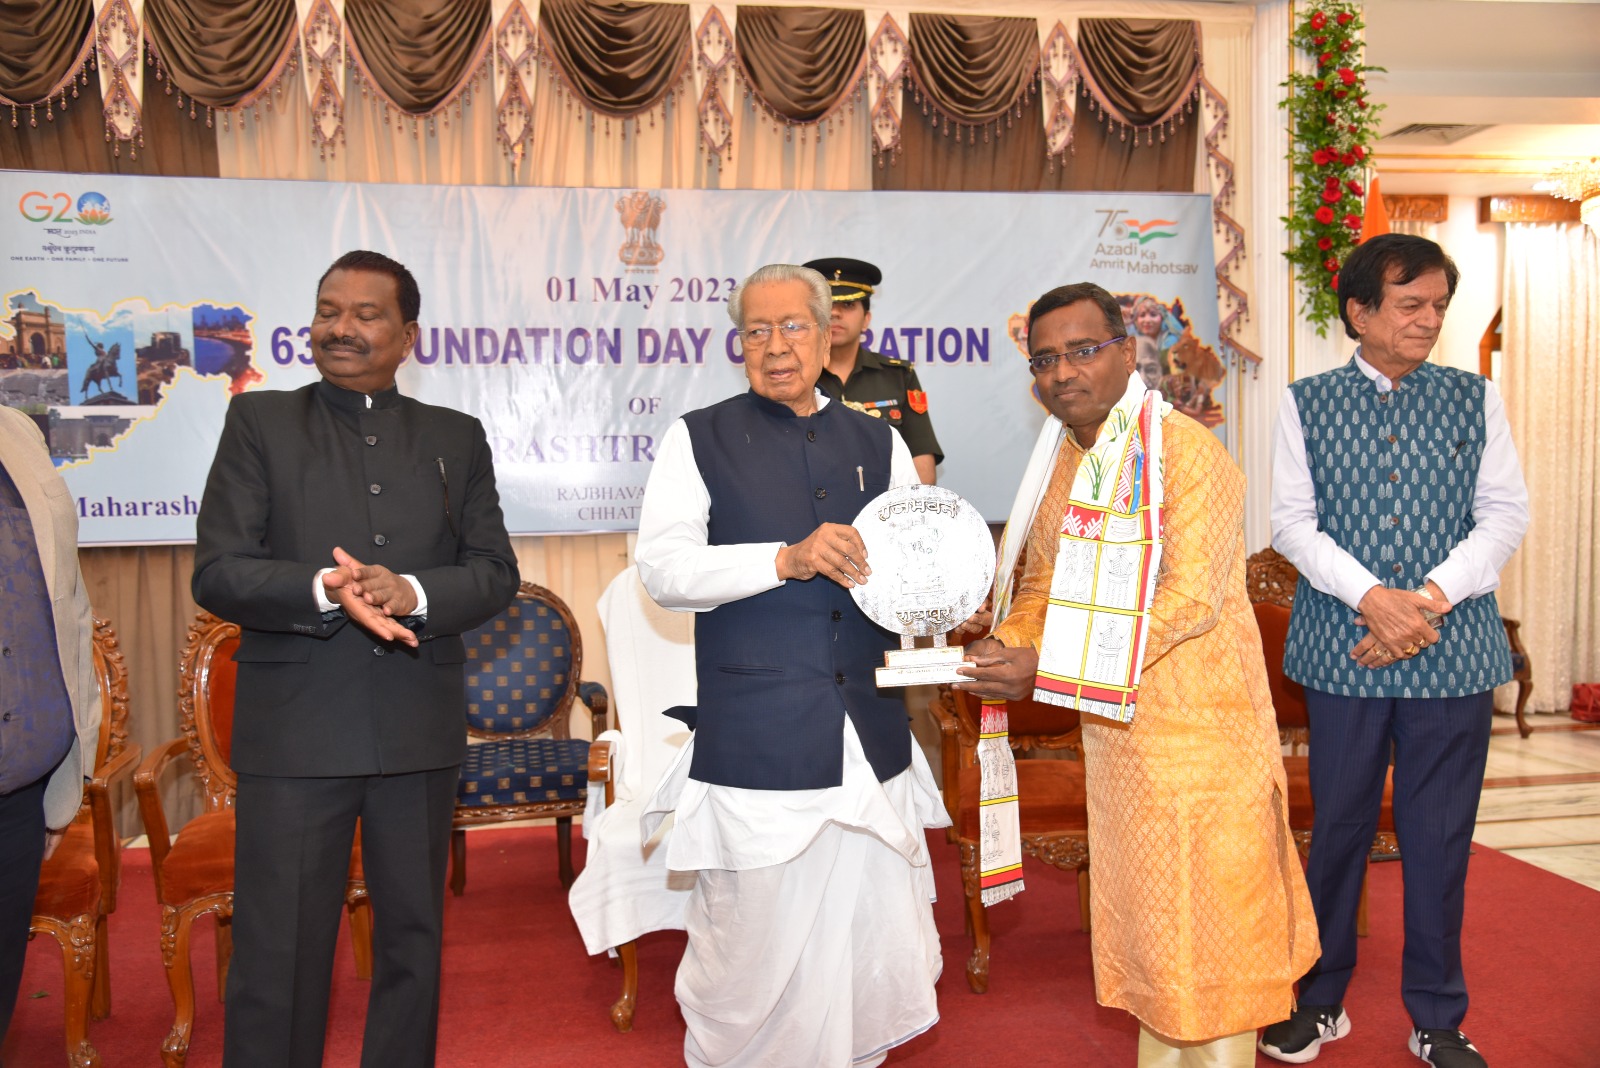 महाराष्ट्र दिवस पर सेवाभावी संस्था महाराष्ट्र मंडळ रायपुर के अध्यक्ष का राज्यपाल ने किया सम्मान